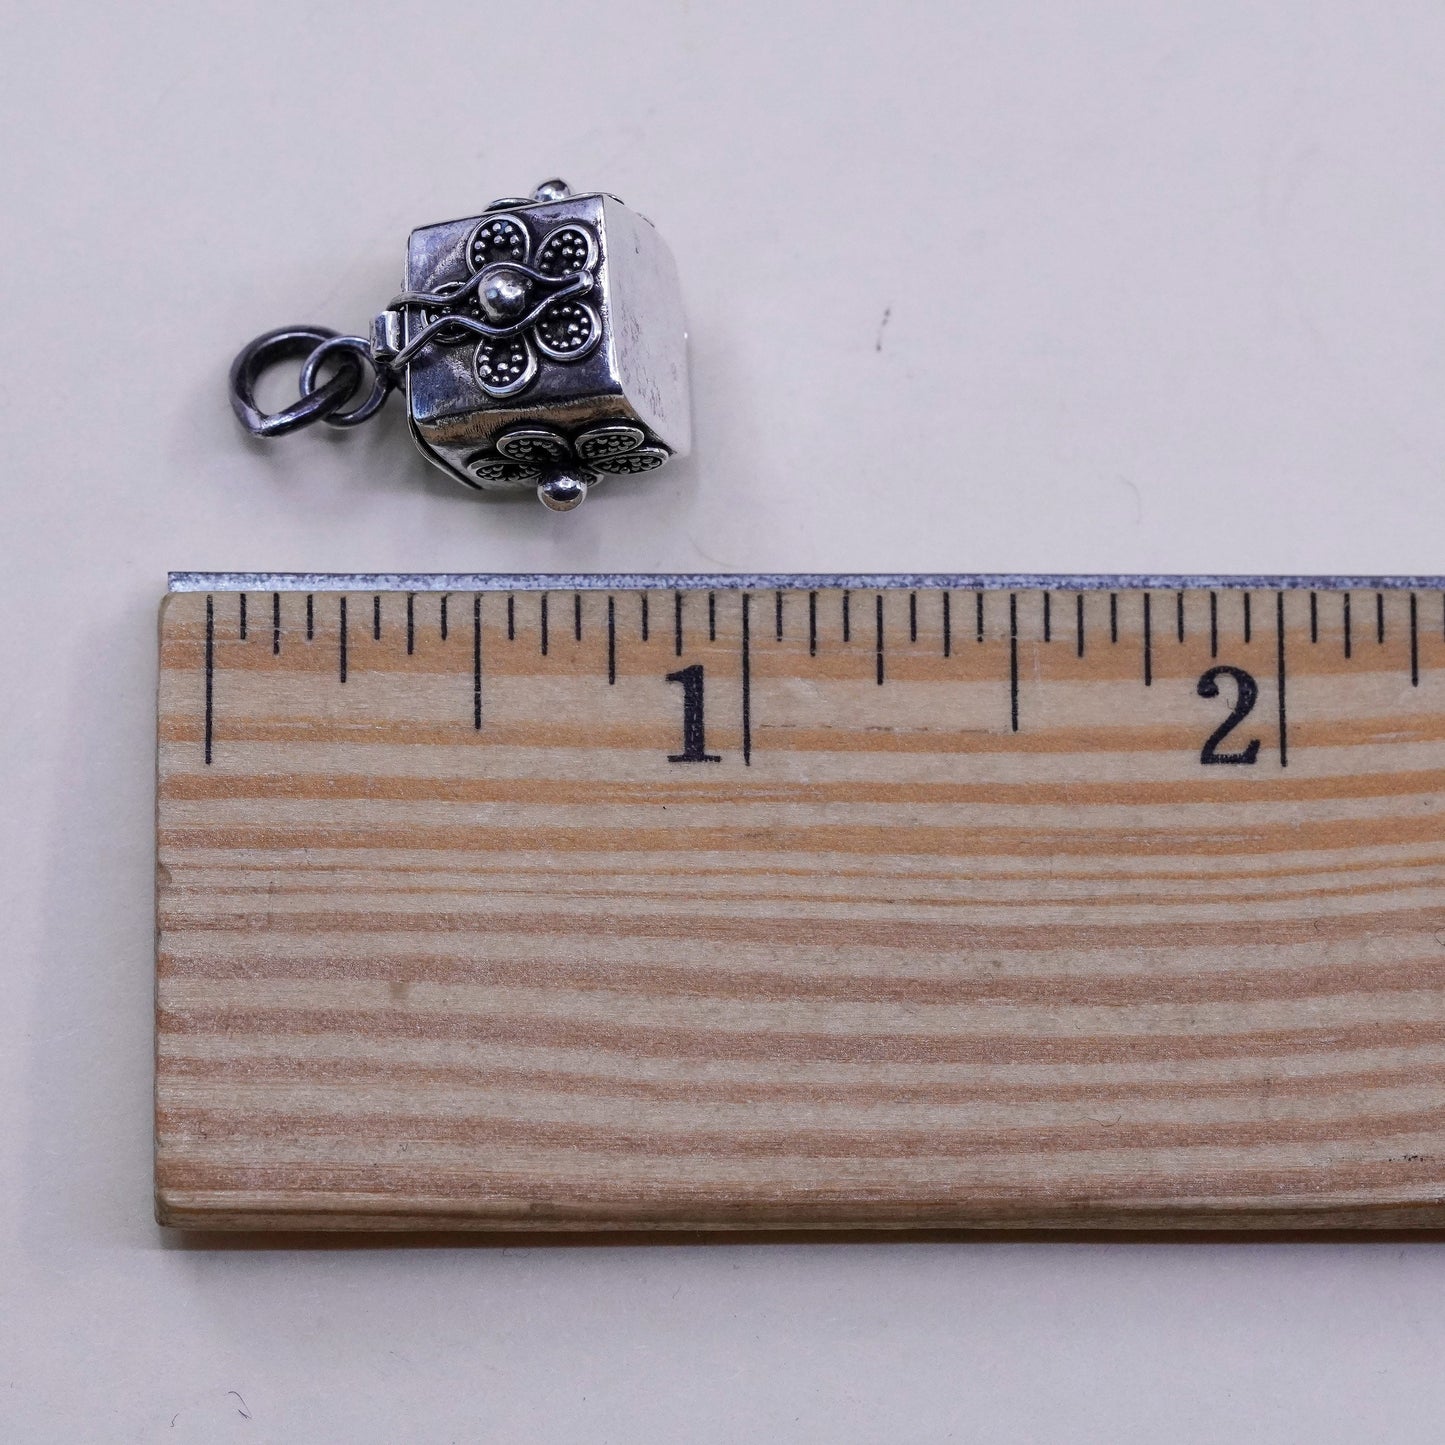 vtg Sterling silver prayer box pendant, 925 handmade locket charm lucky clover